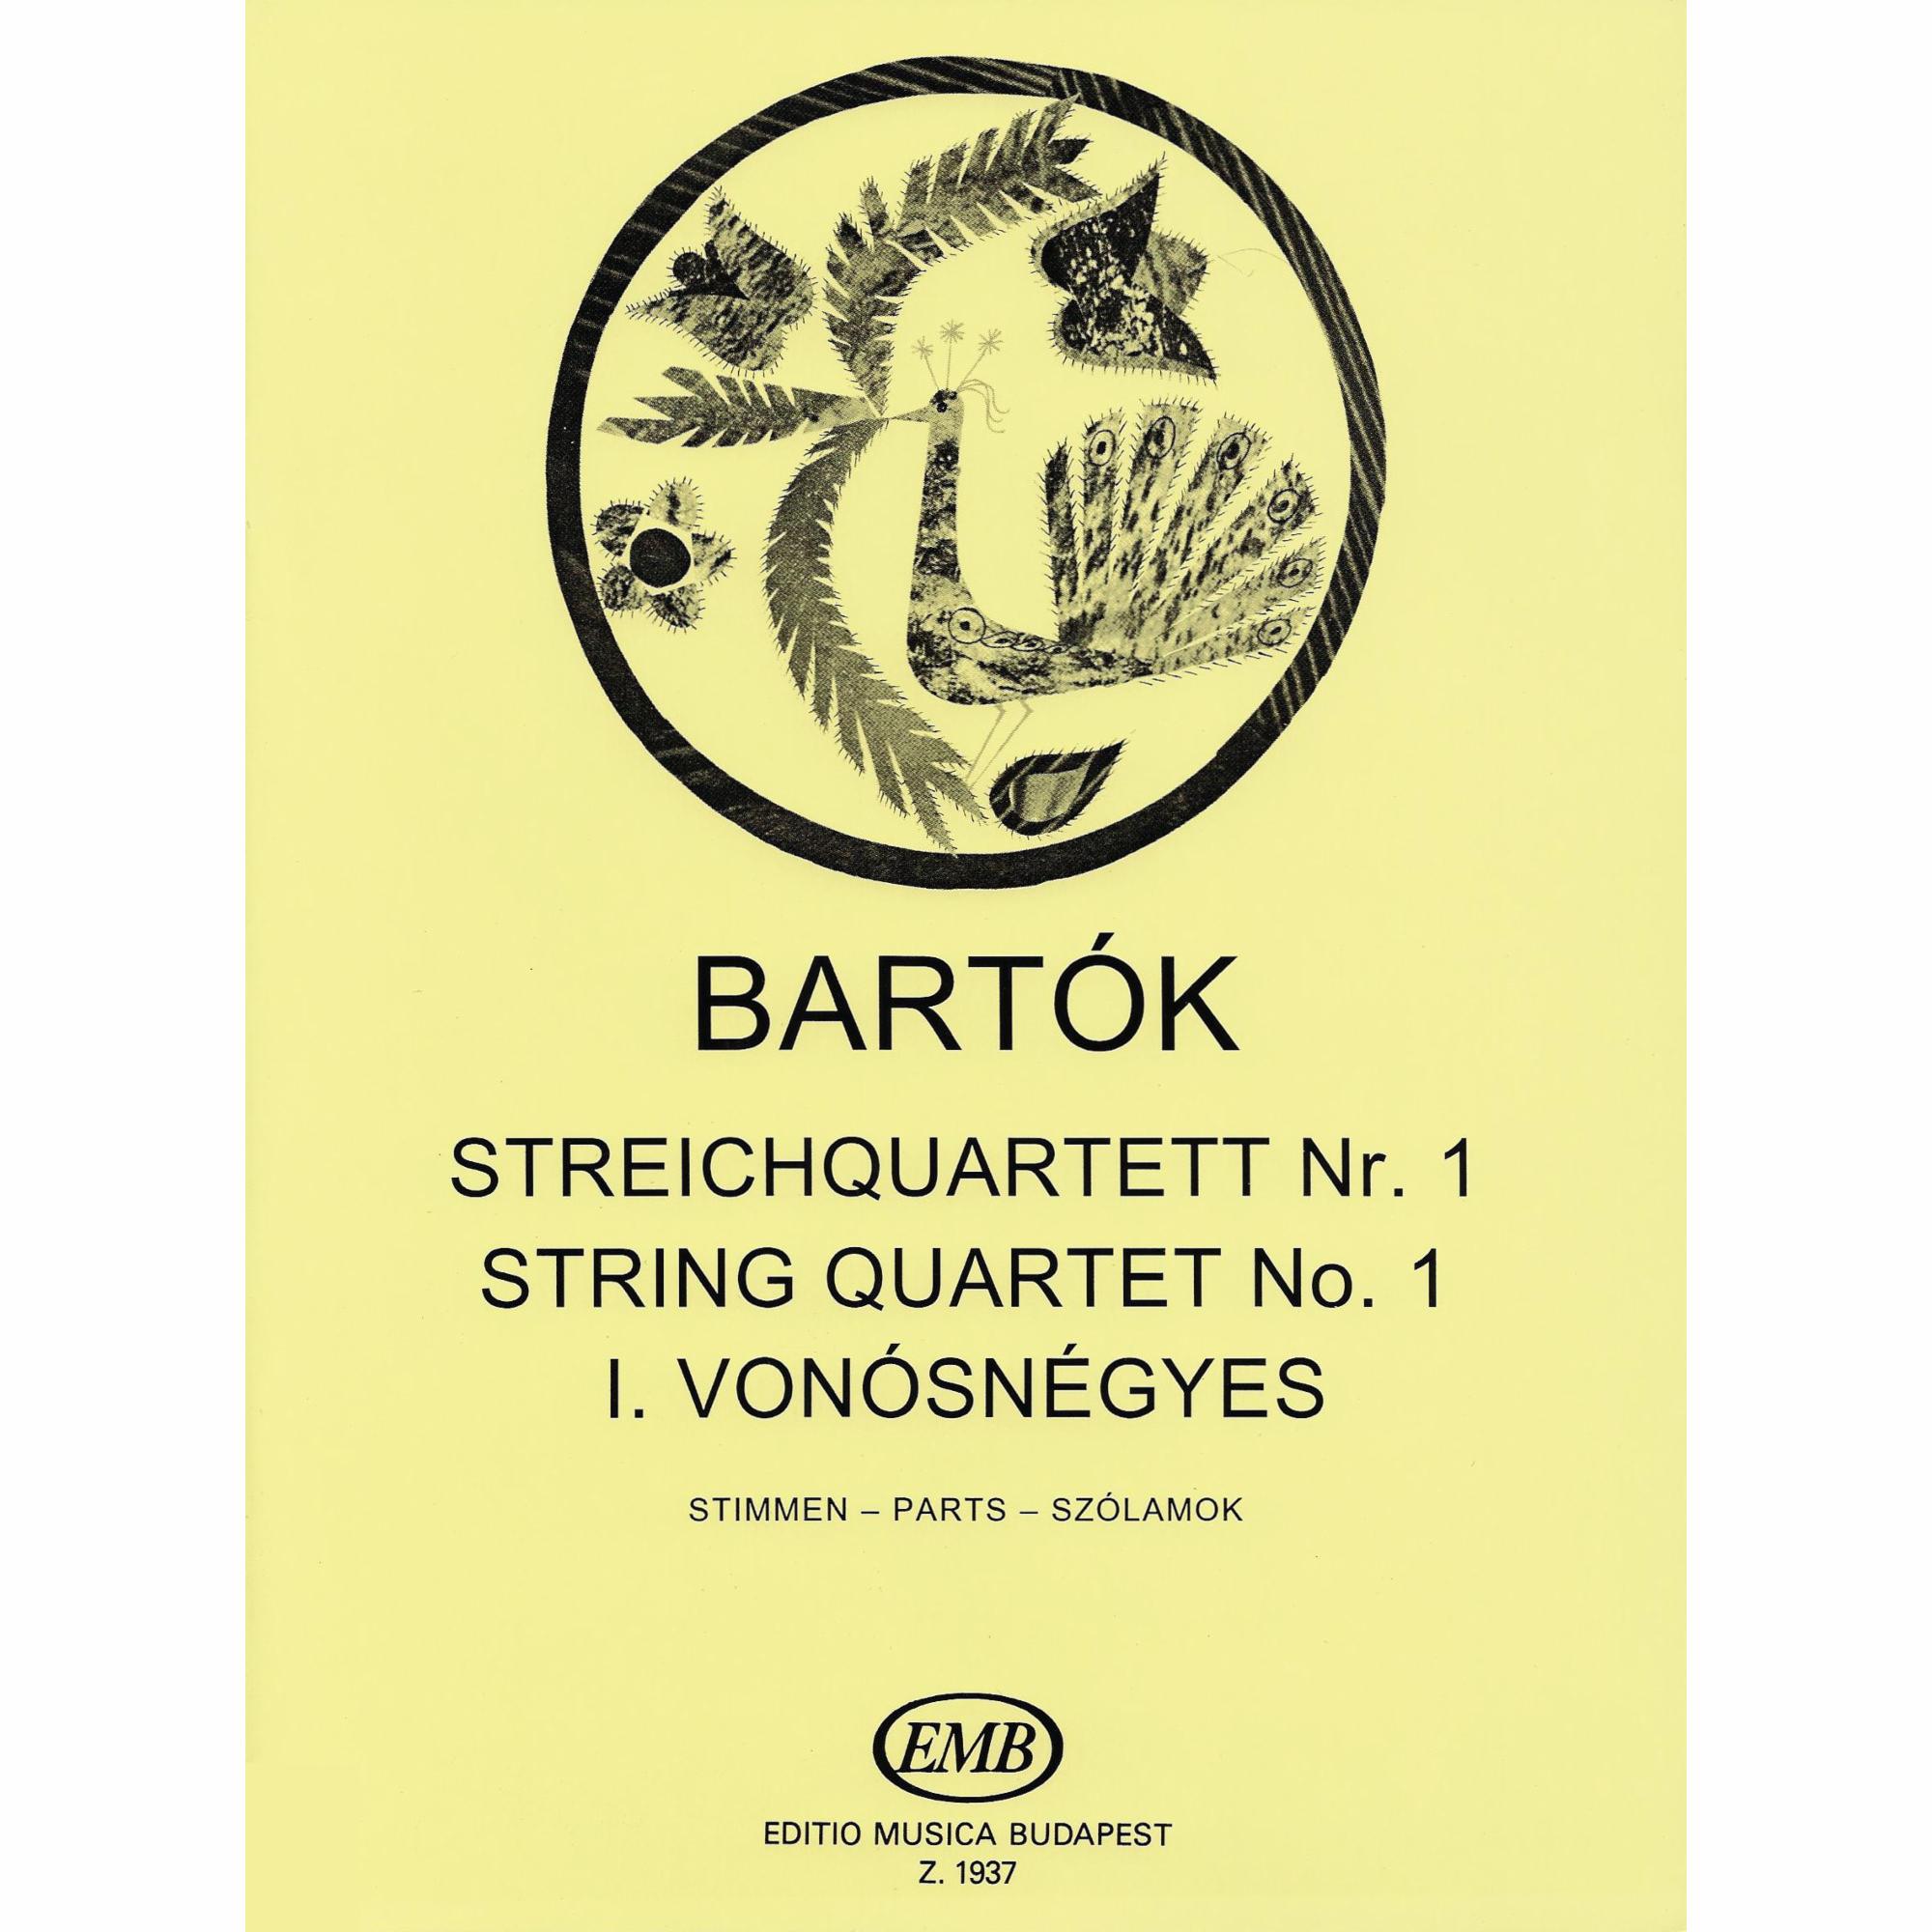 Bartok -- String Quartet No. 1